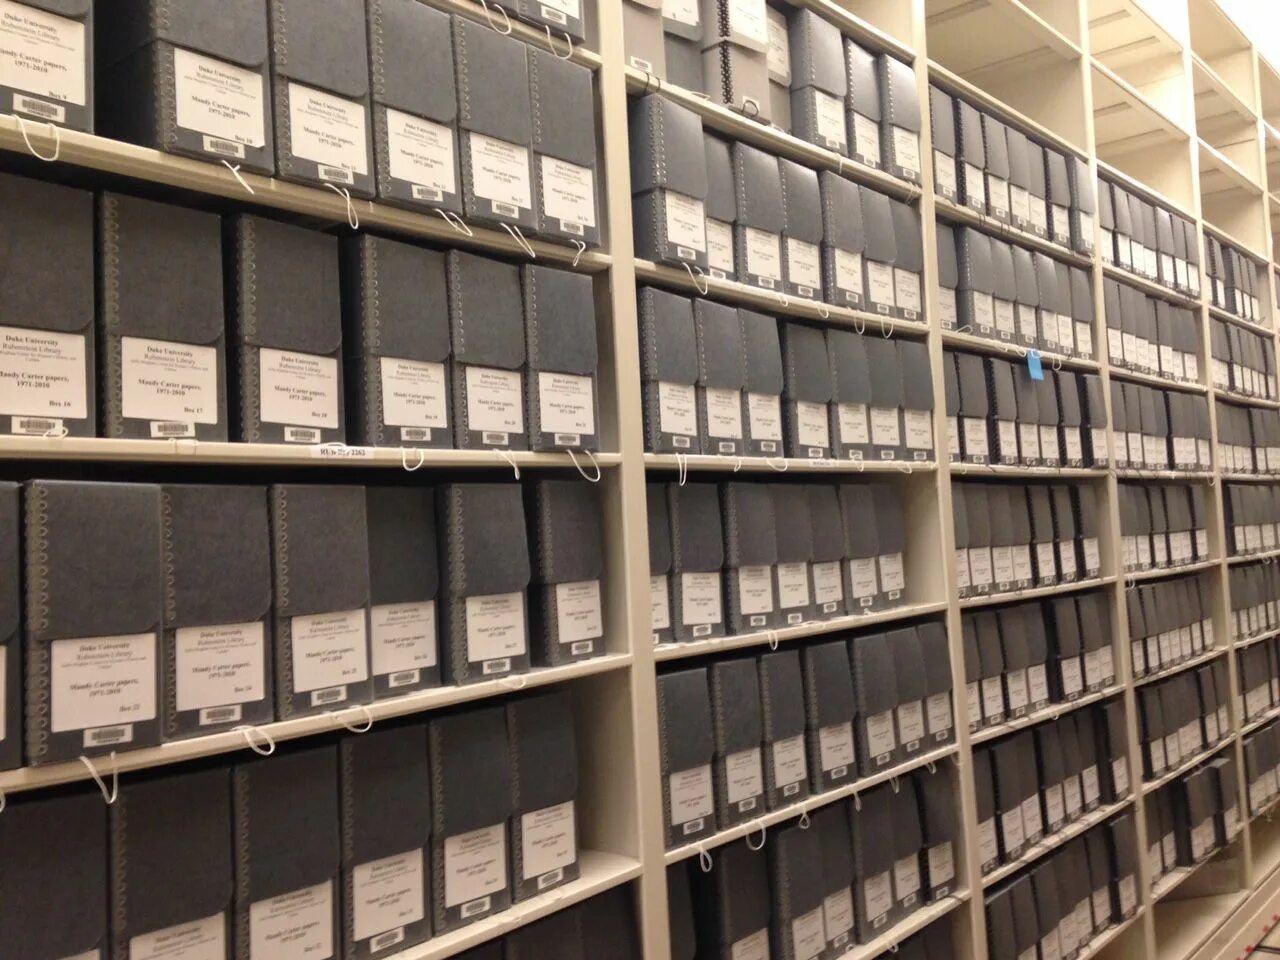 Архив ЦРУ. ЦРУ файлы. Архив ЦРУ арт. Library Storage ленточное хранение.